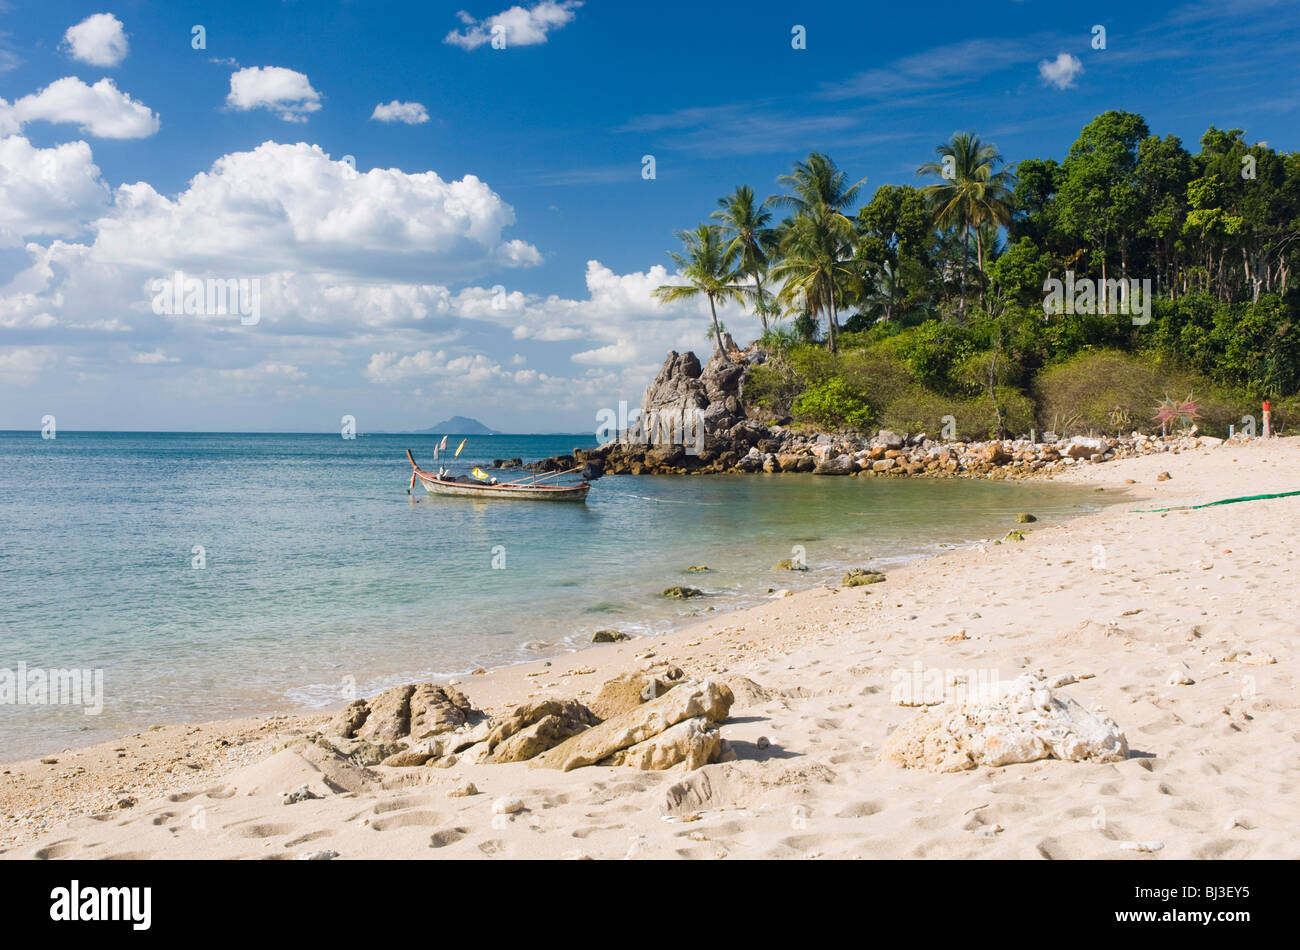 Palm beach, Klong Khong Beach, Ko Lanta or Koh Lanta island, Krabi, Thailand, Asia Stock Photo